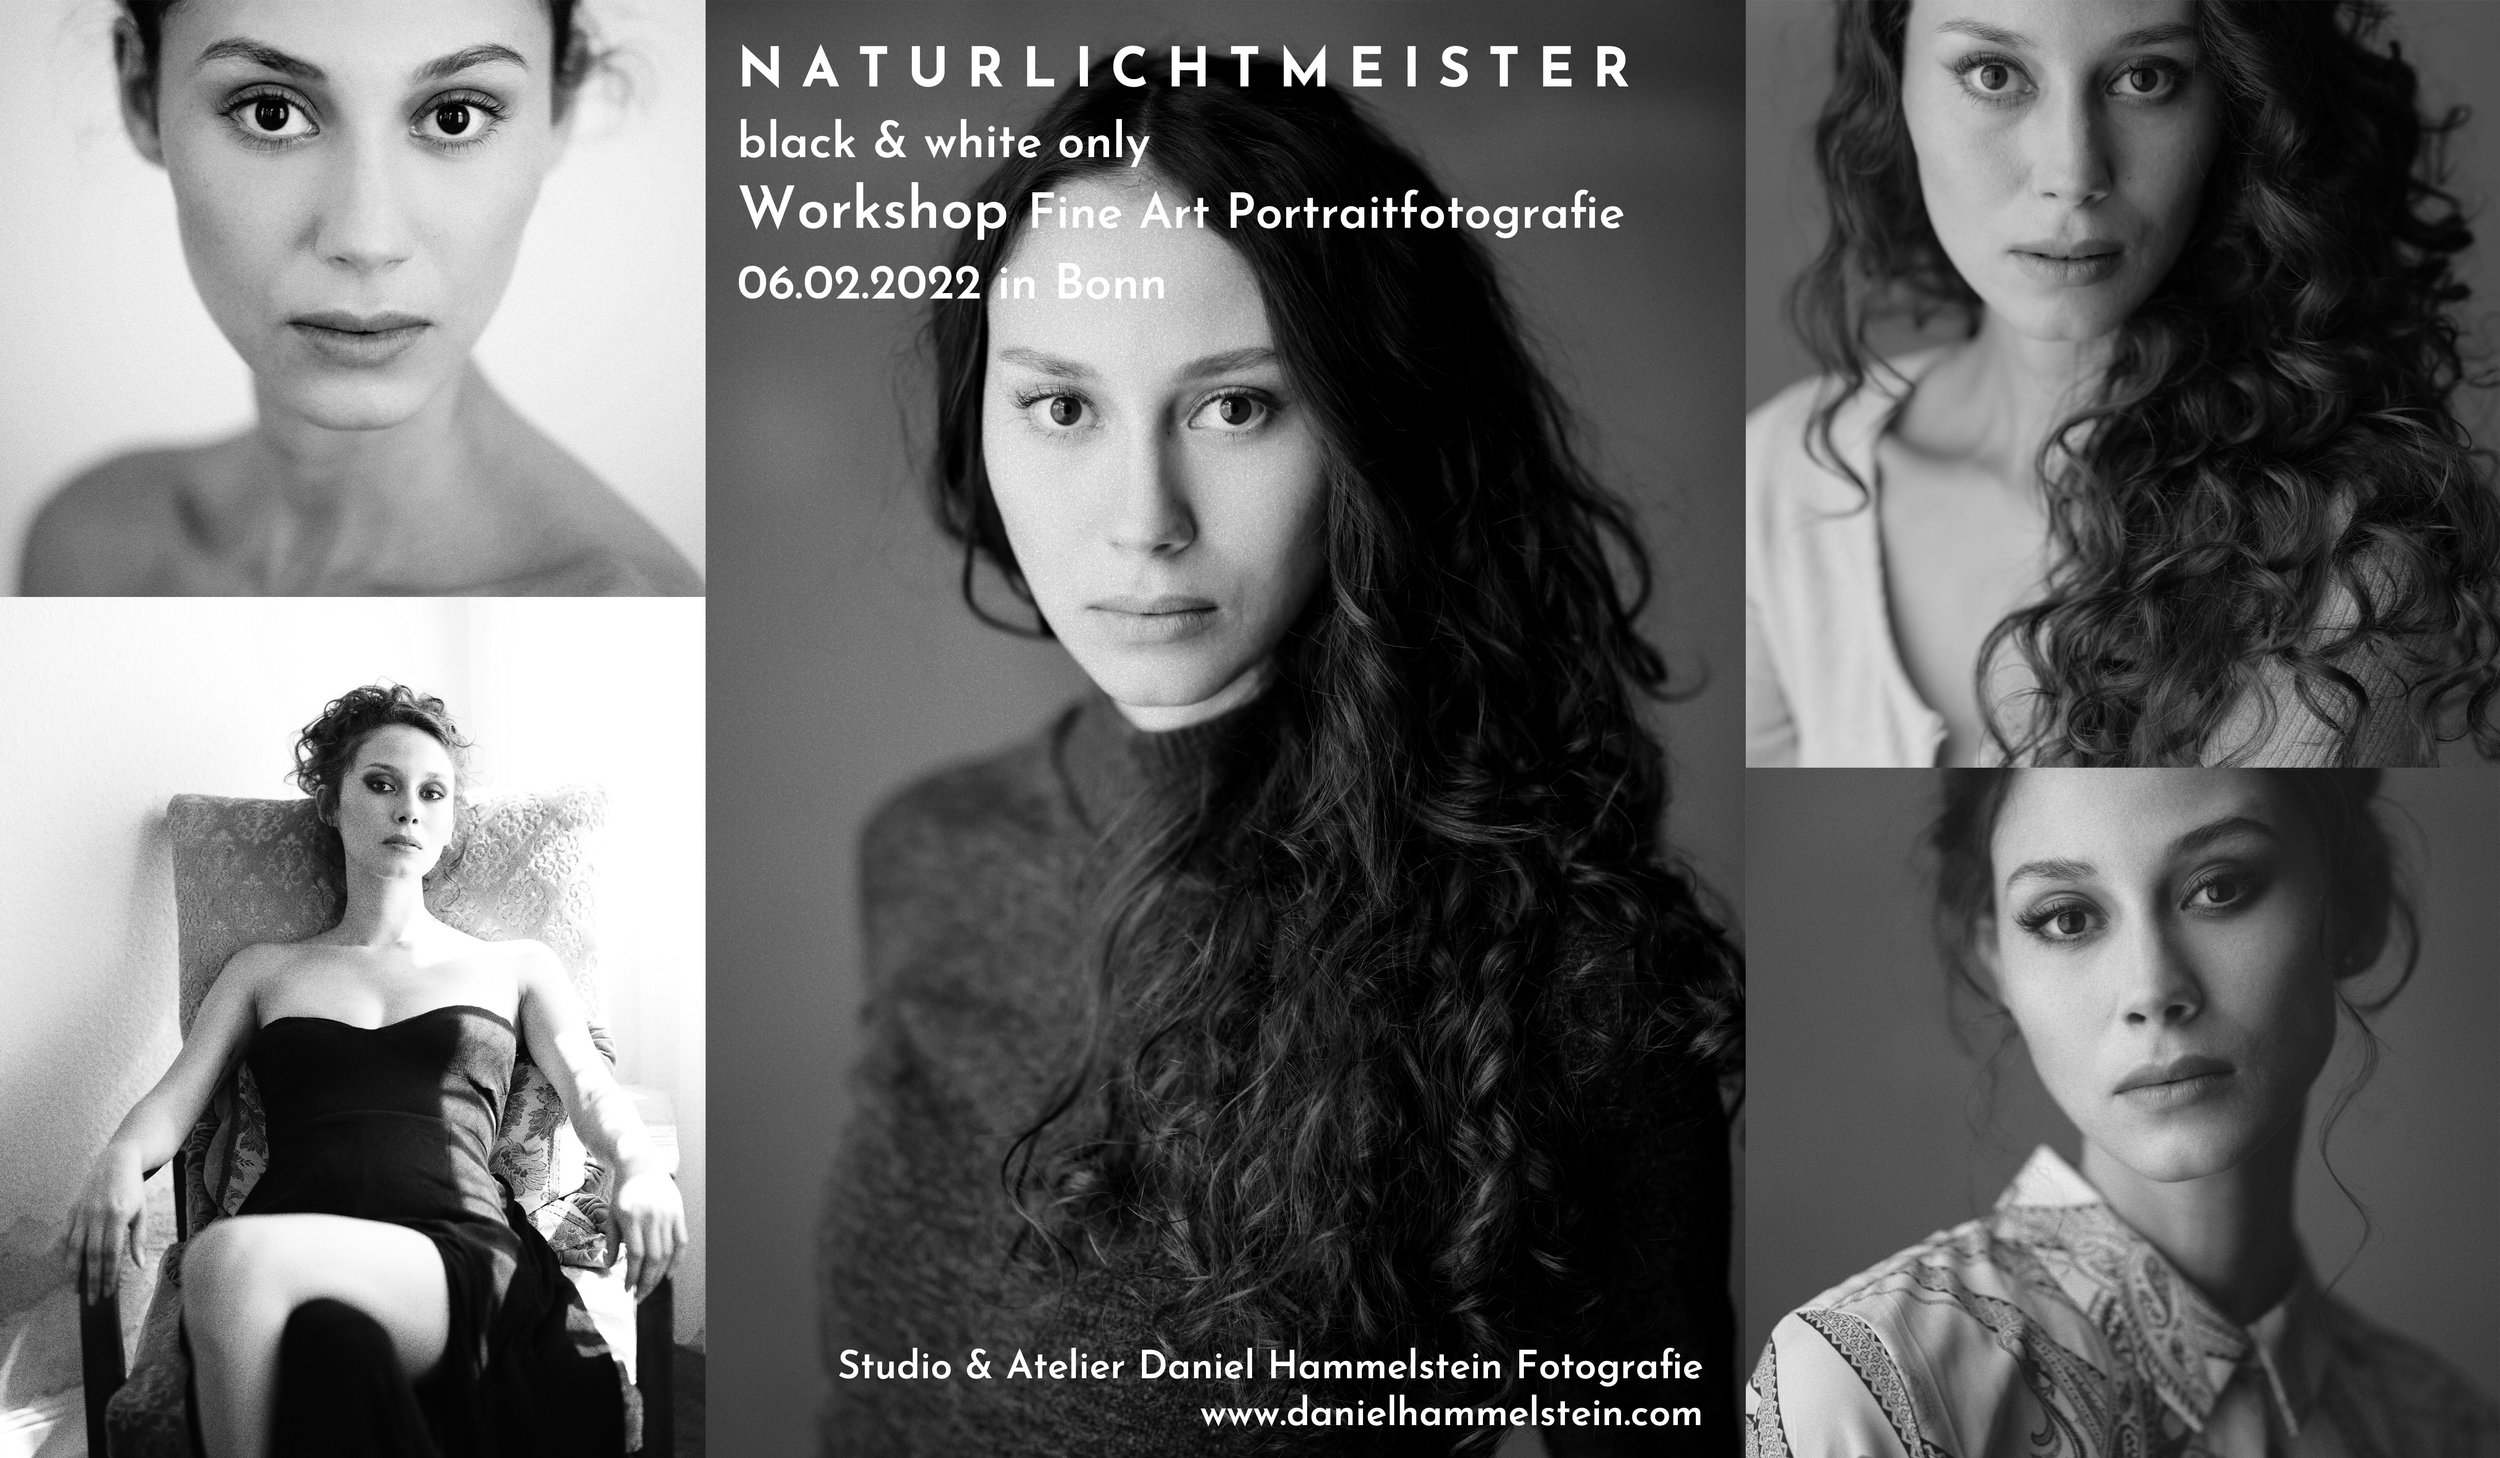 Naturlichtmeister Workshop Februar 2022 Daniel Hammelstein Portrait Workshop Portraitfotografie Schwarzweissfotografie Fotoworkshop Fotokurs Bonn Köln Düsseldorf NRW.jpg